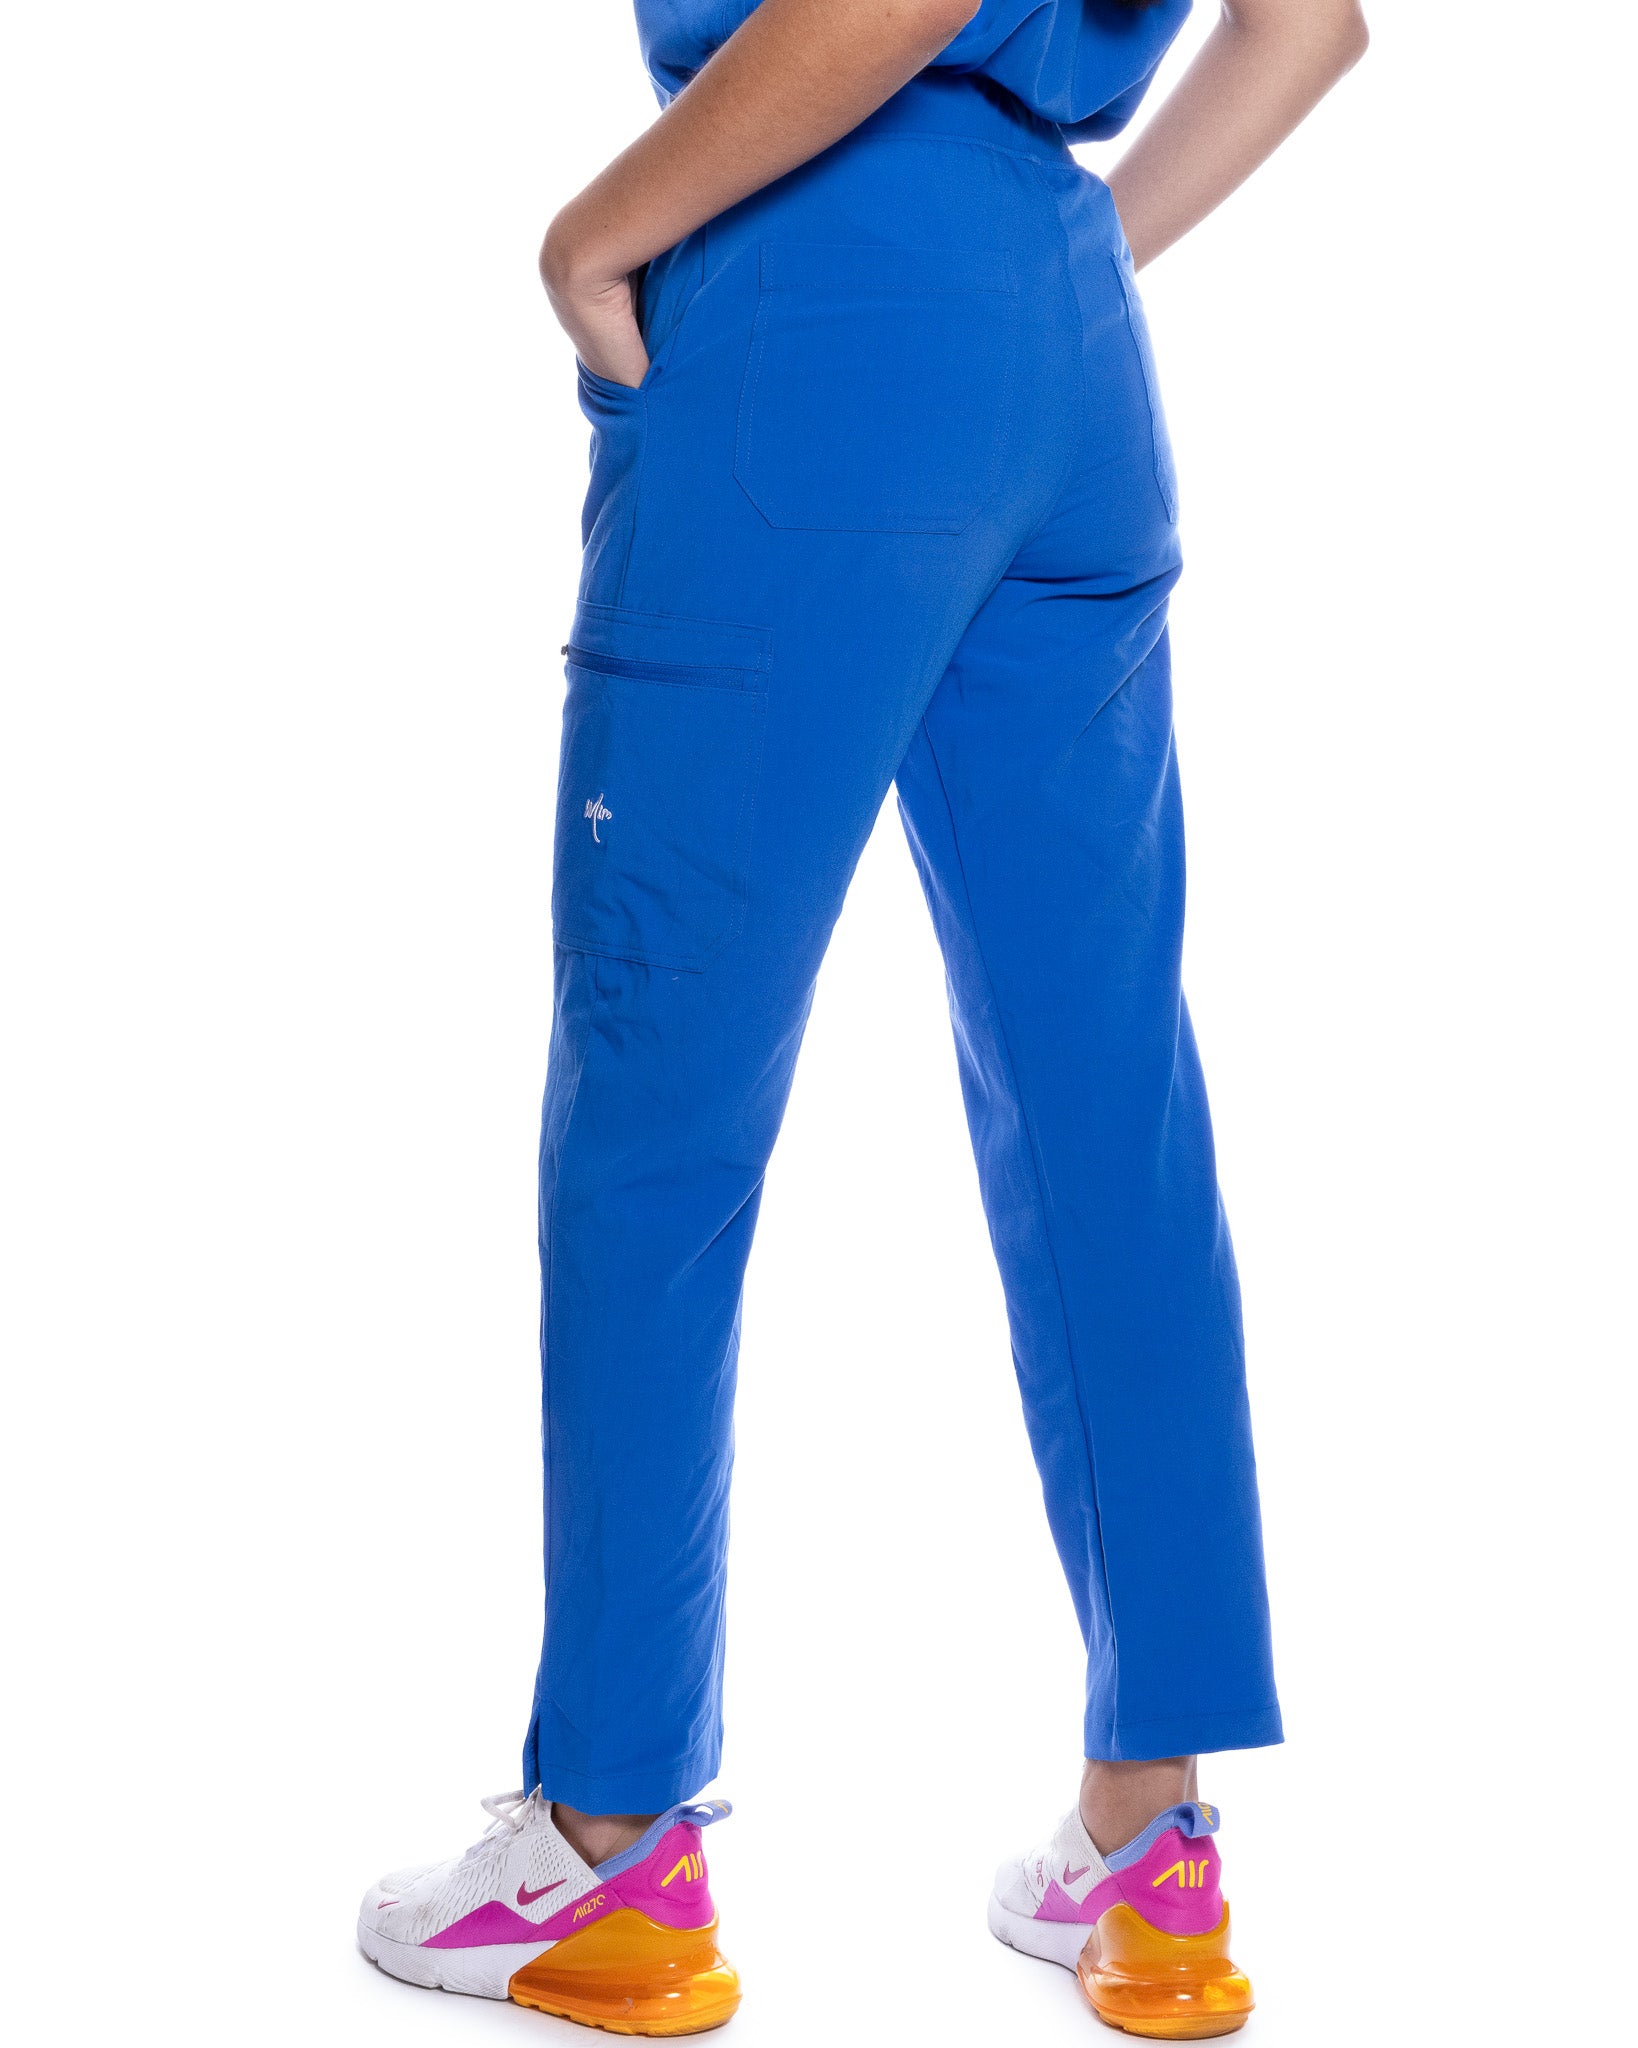 mimscrubs women royal blue scrub pants 